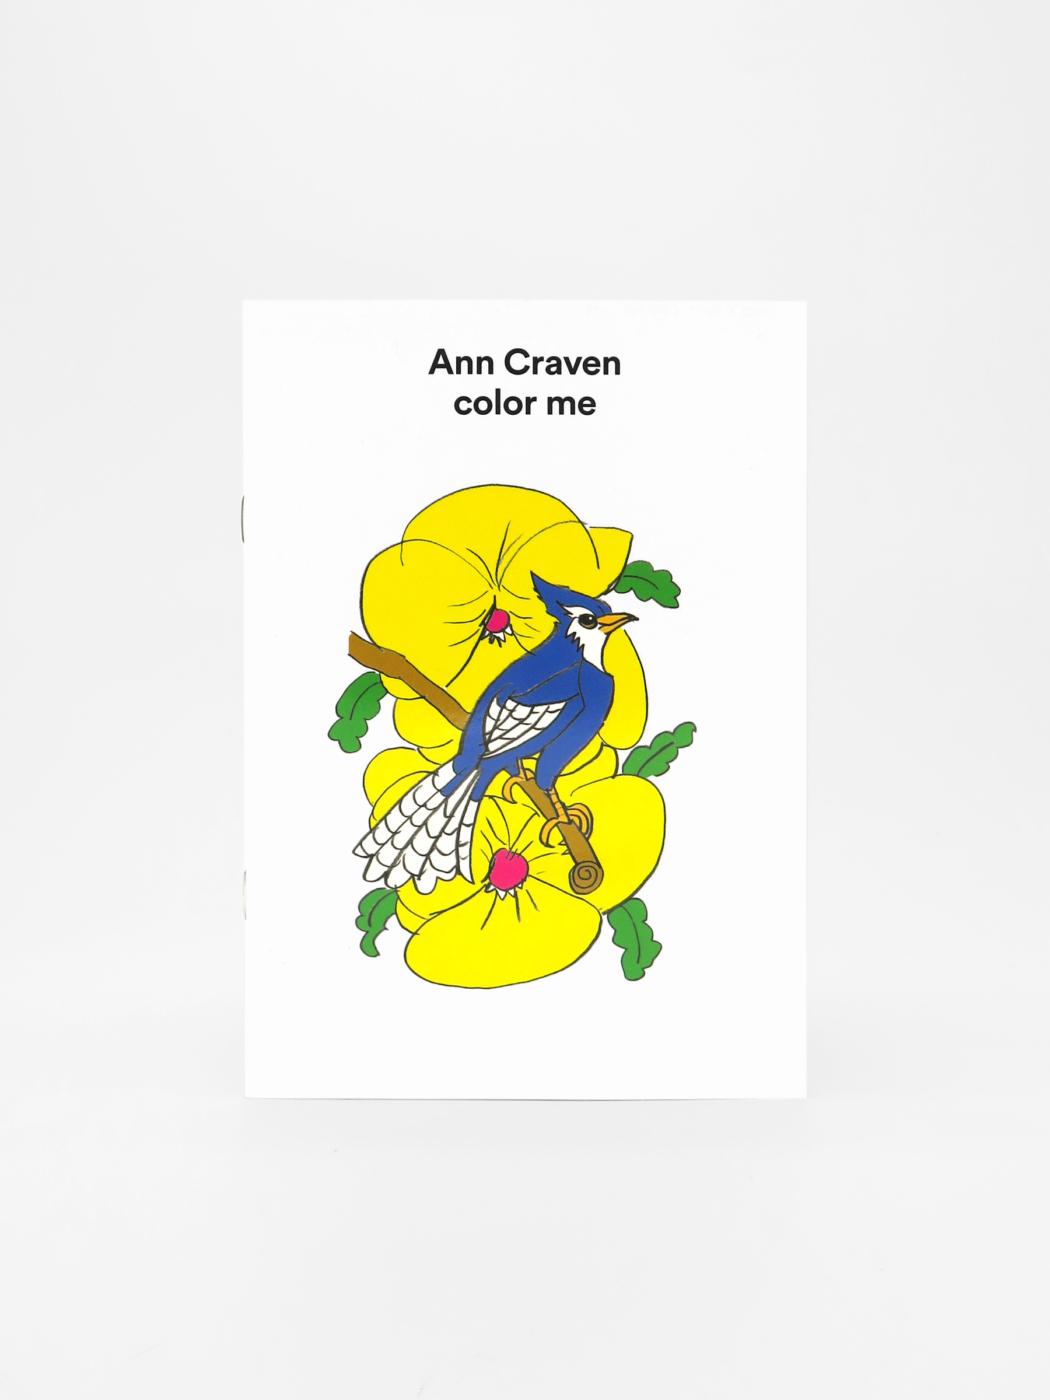 Ann Craven, color me